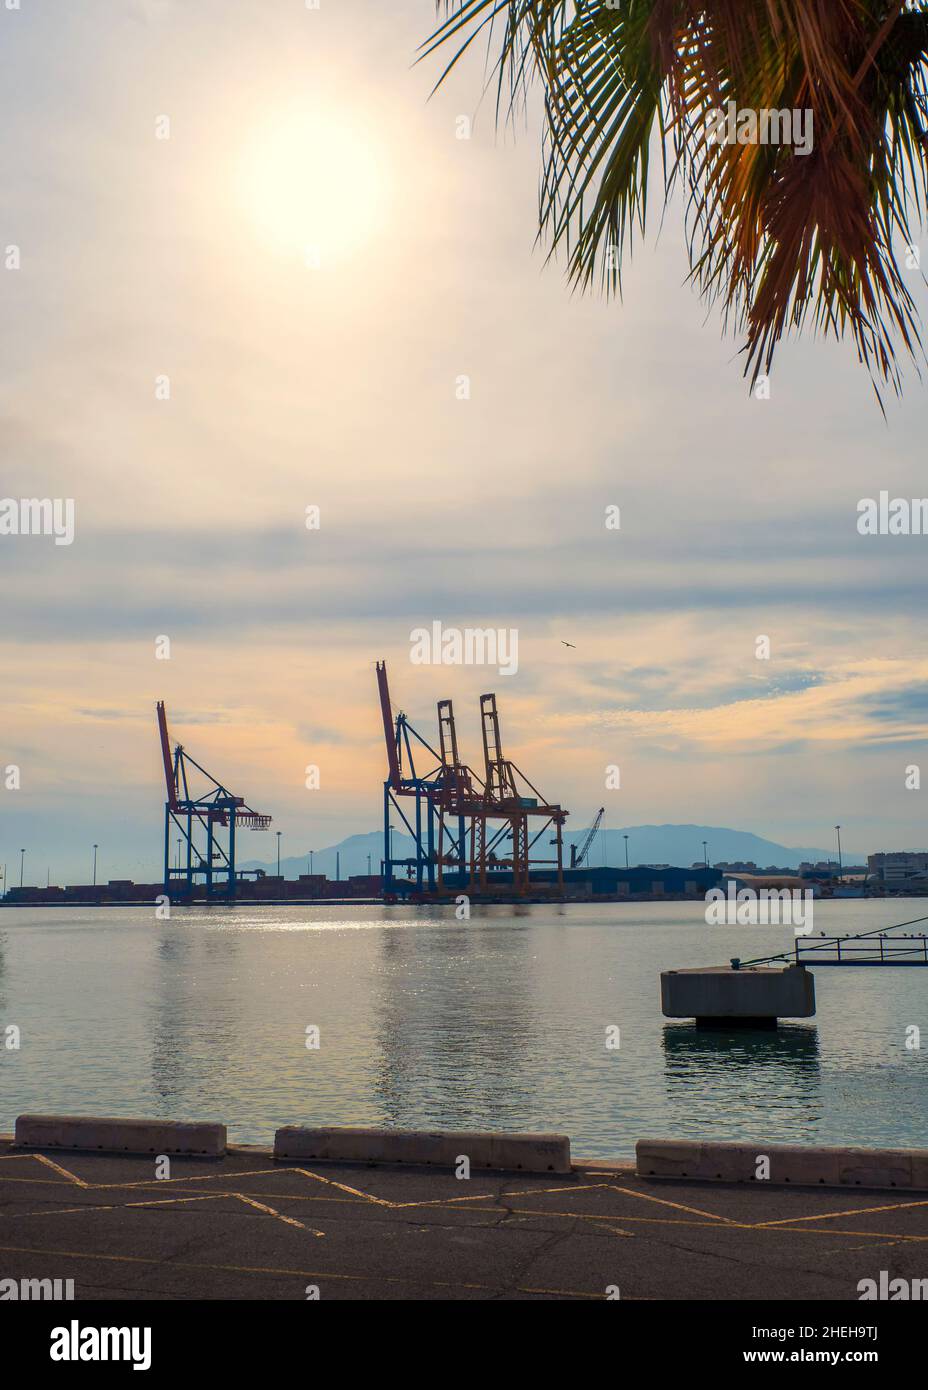 Grandi gru su una delle banchine nel porto di Malaga al tramonto. Foto Stock